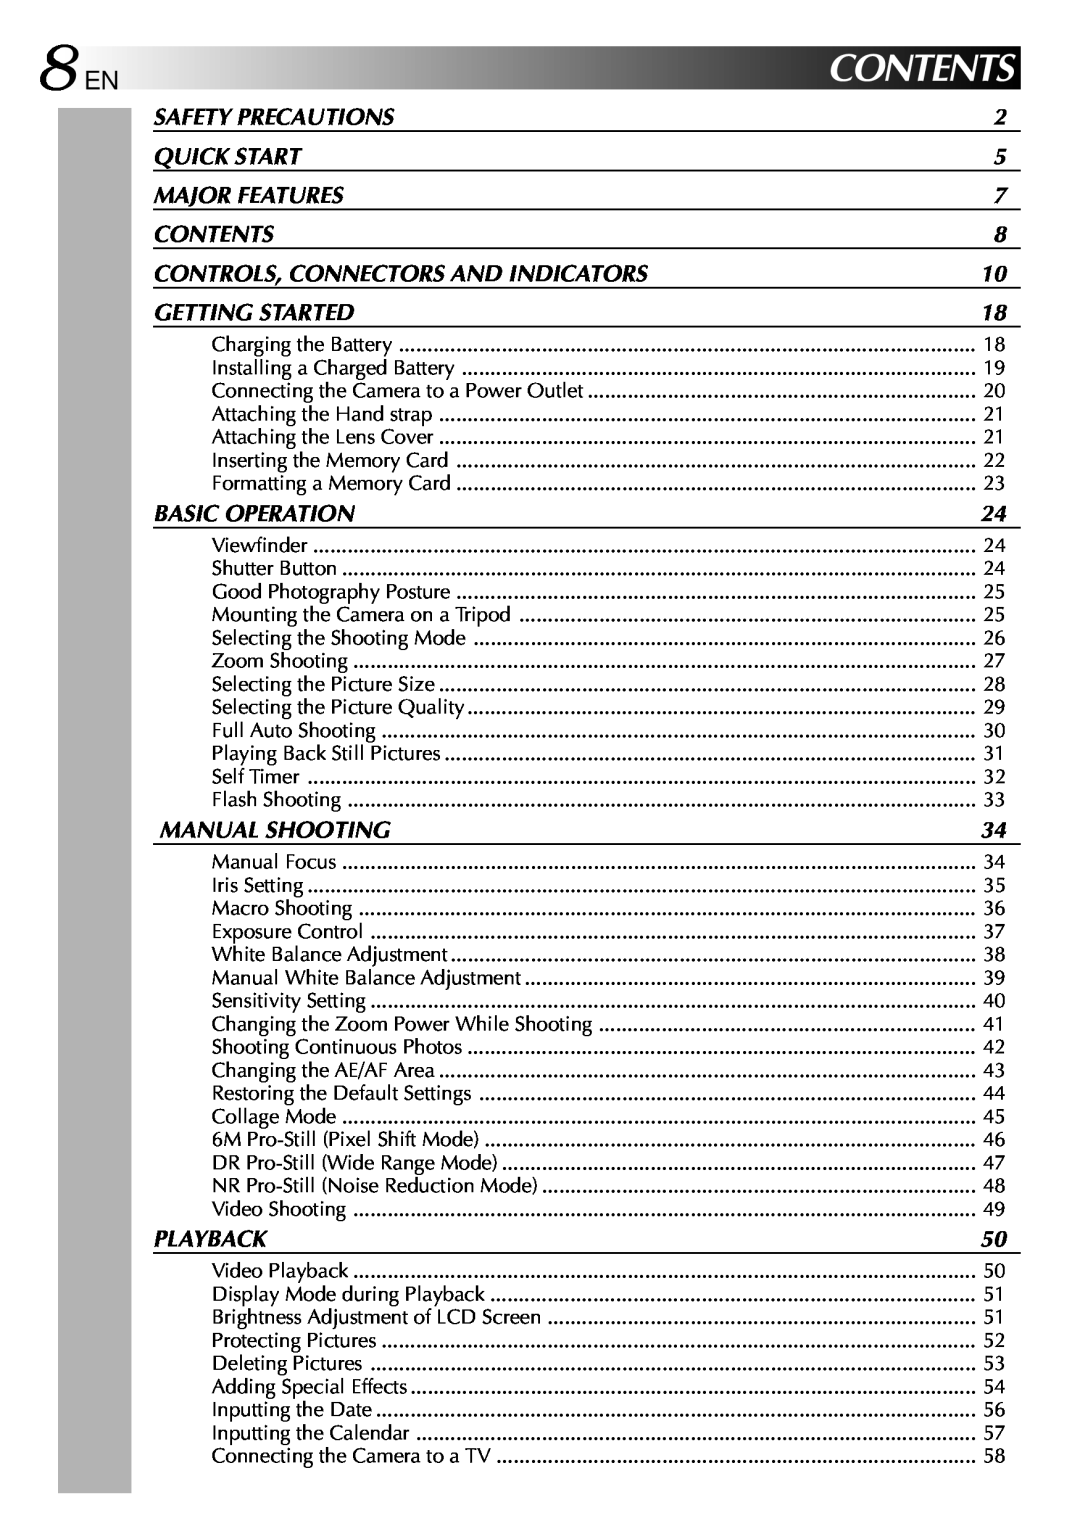 JVC GC-QX3 manual 8 EN, Contents 